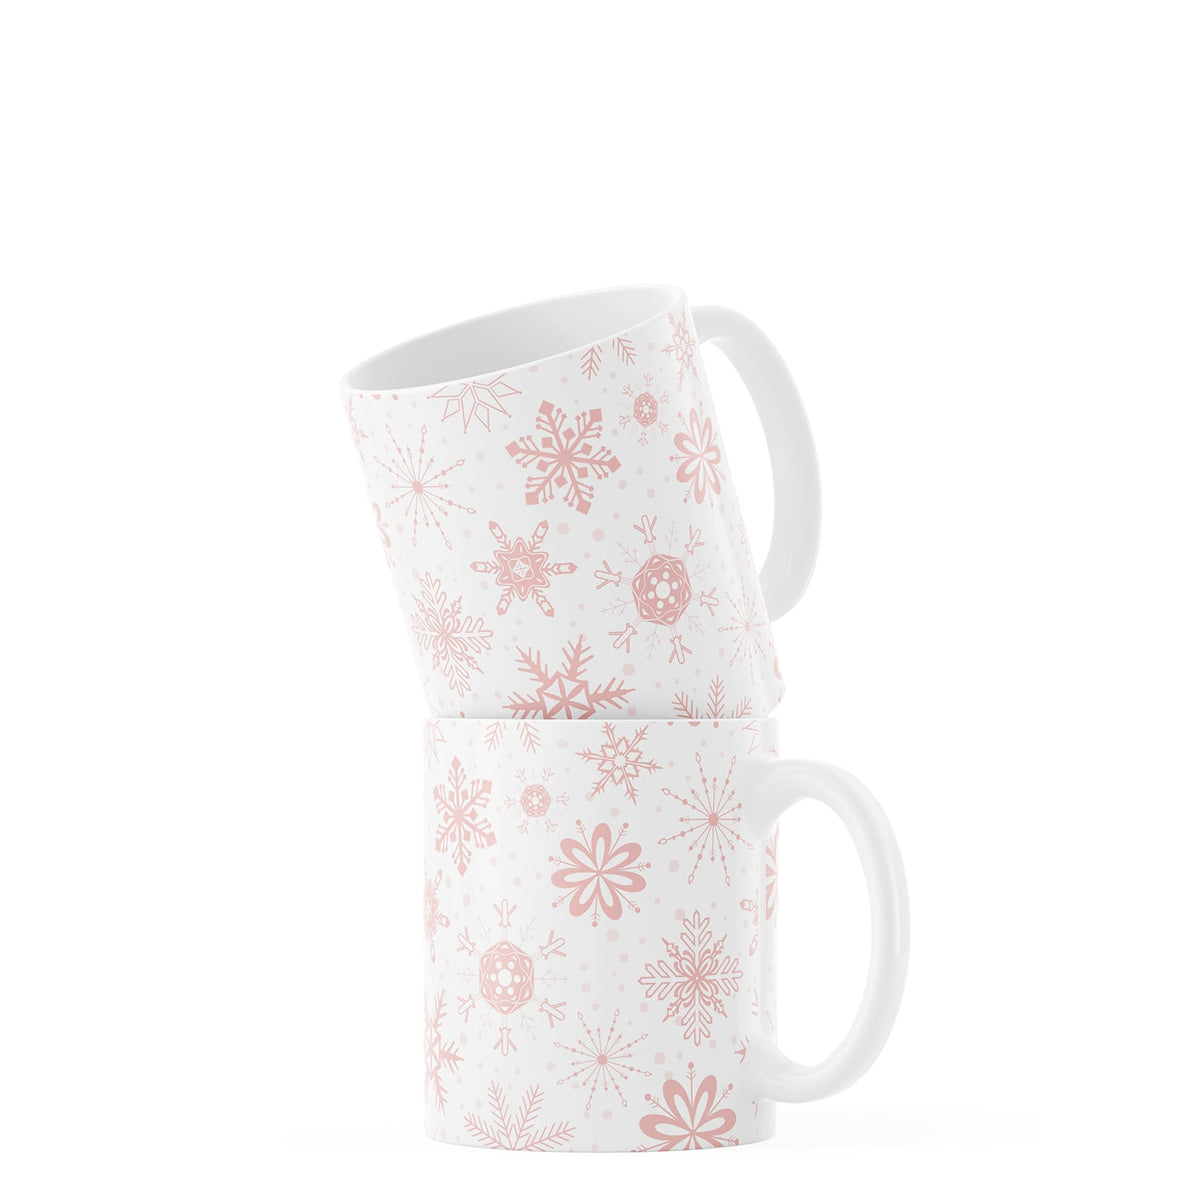 White Snowflake Coffee Mug